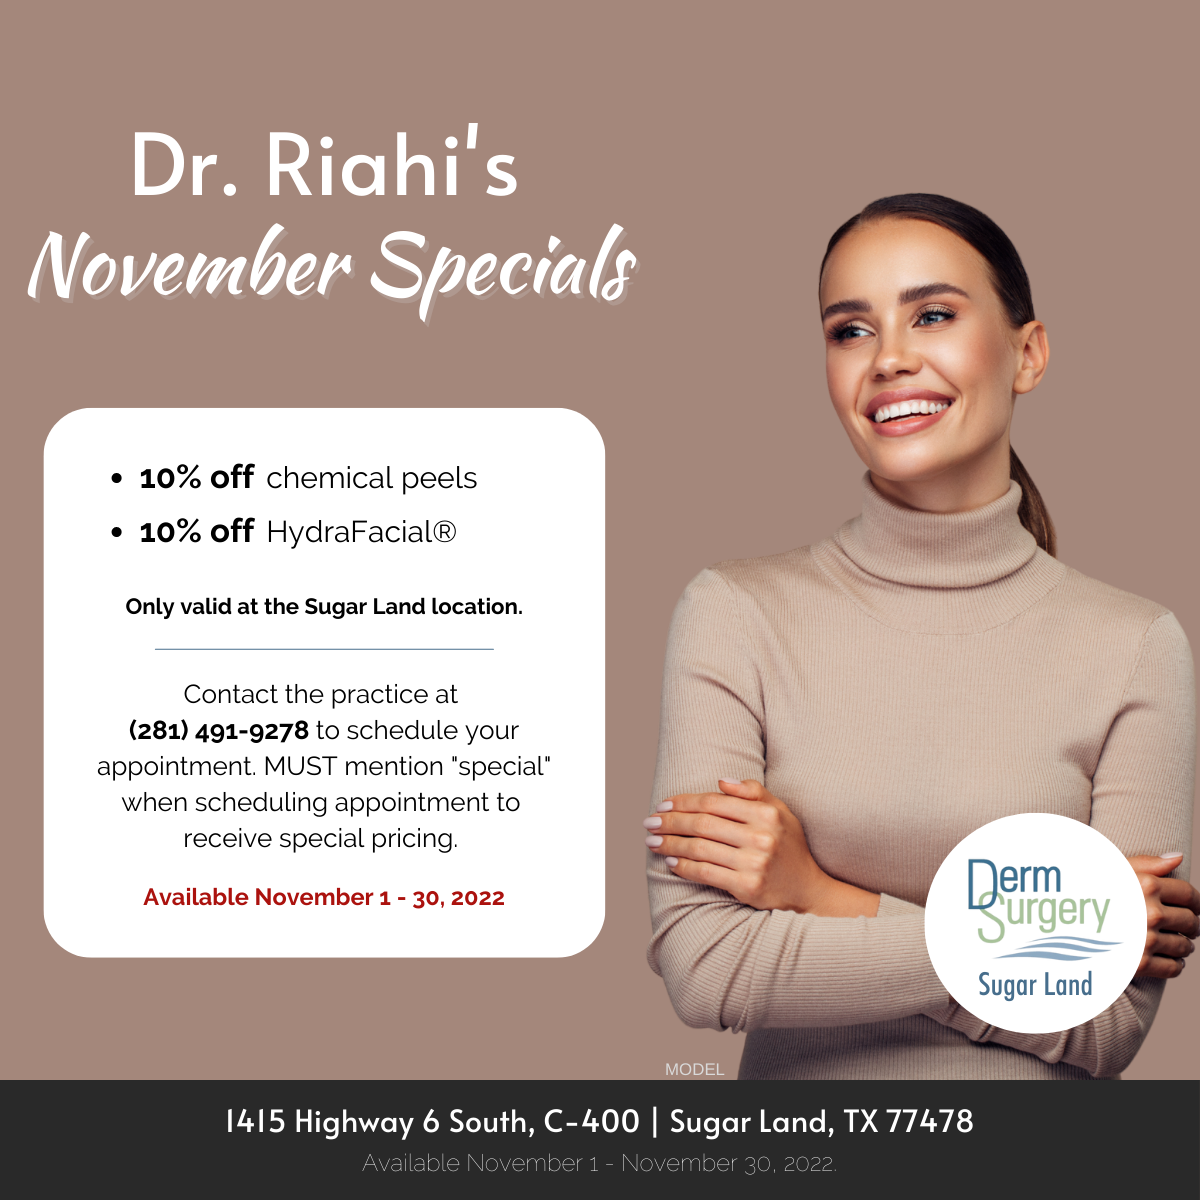 Dr. Riahi's November Specials 2022